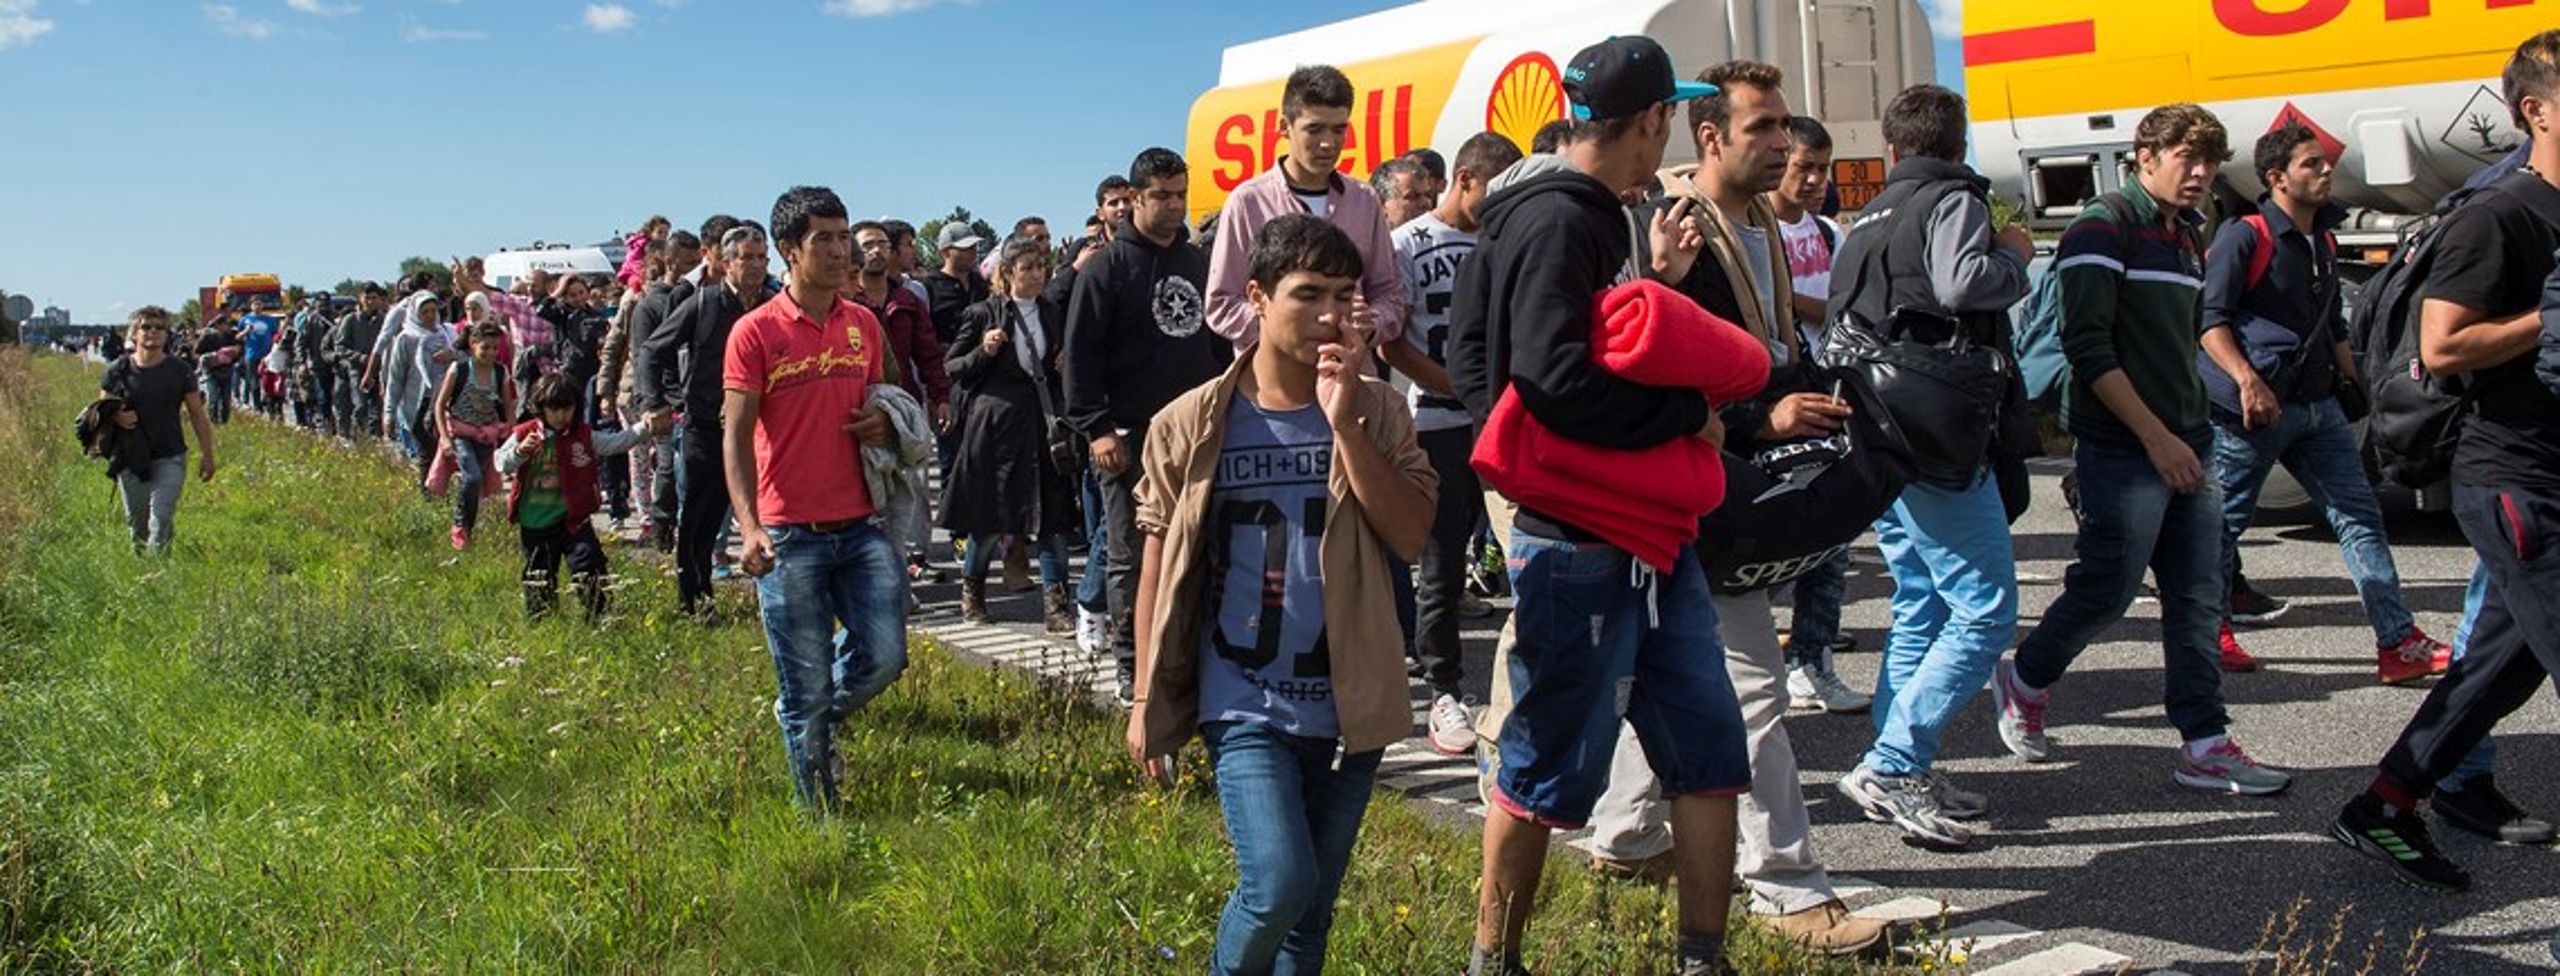 Cirka 21.000&nbsp;asylansøgere tog turen til Danmark&nbsp;i 2015